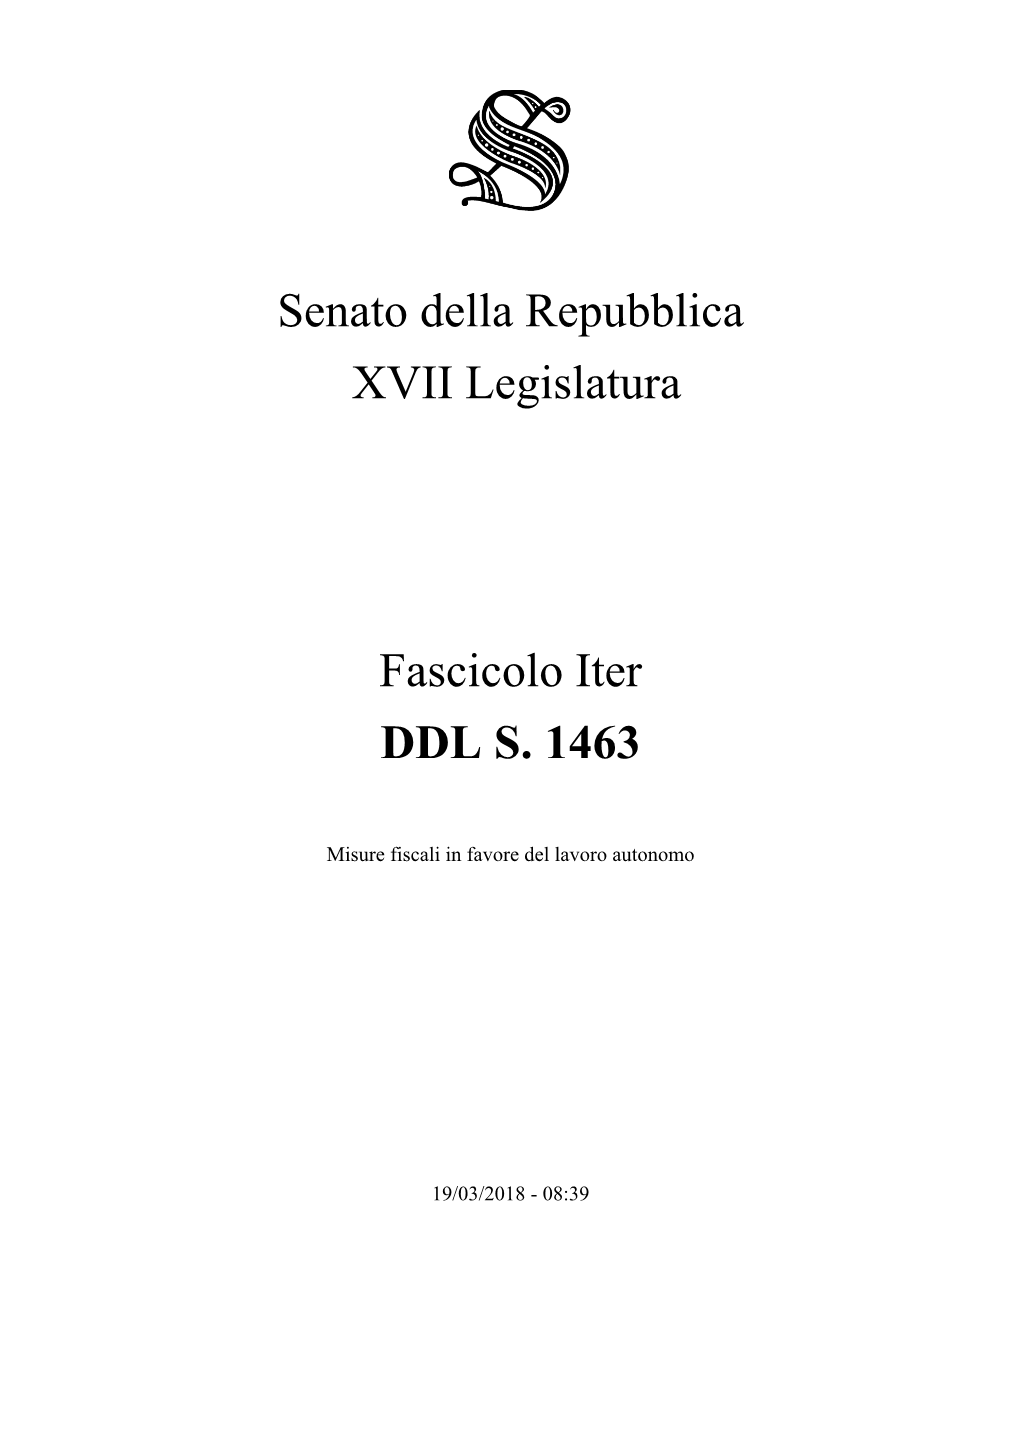 Senato Della Repubblica XVII Legislatura Fascicolo Iter DDL S. 1463